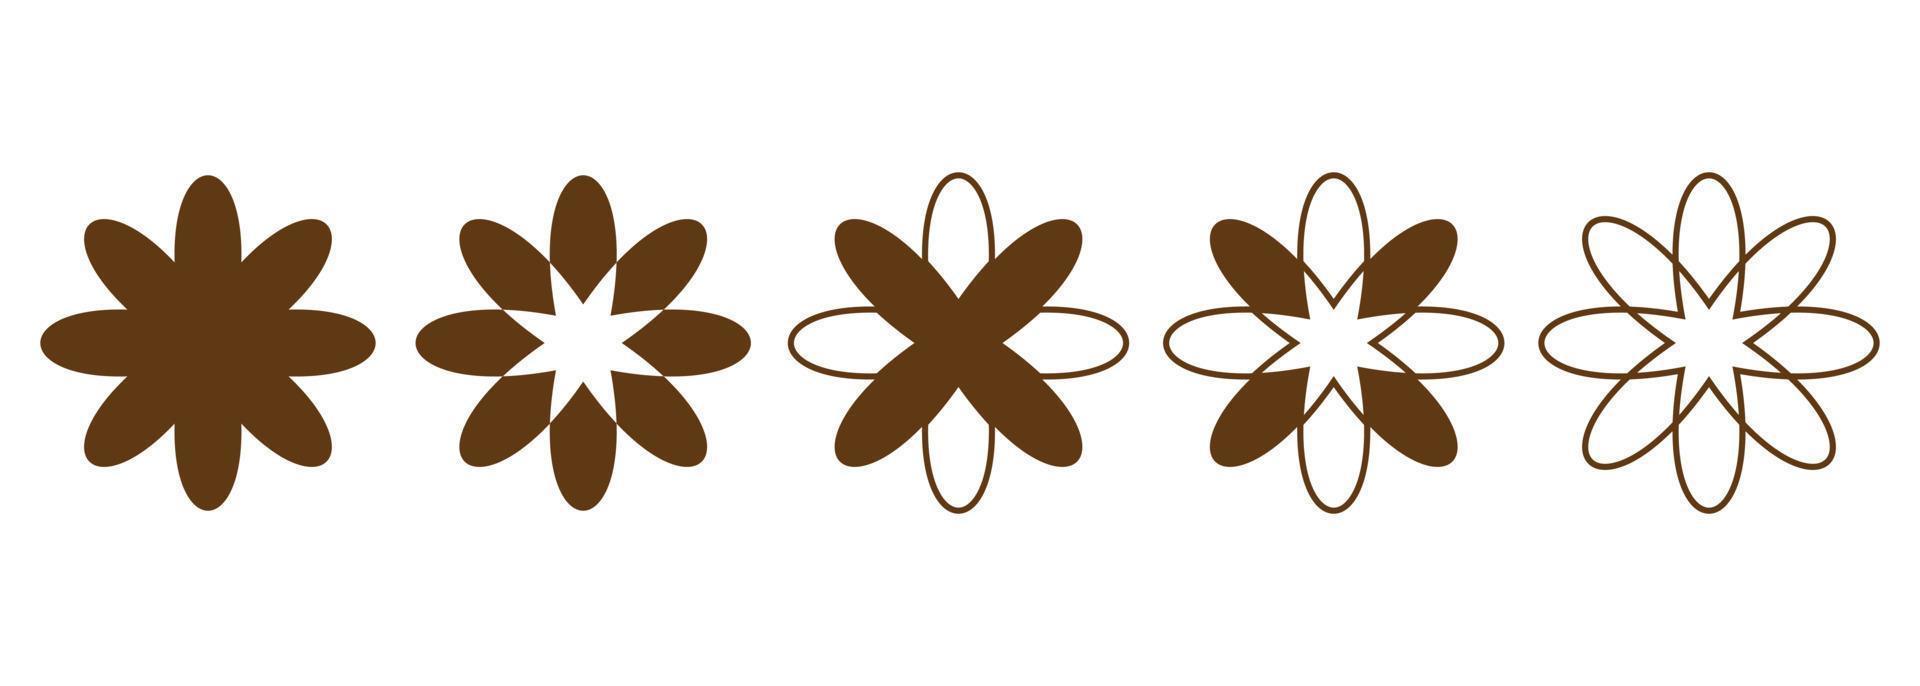 conjunto do radial floral geométrico formas. floral ícones para logotipo, tatuagem, marca, embalagem, social meios de comunicação Postagens. vetor ilustração.